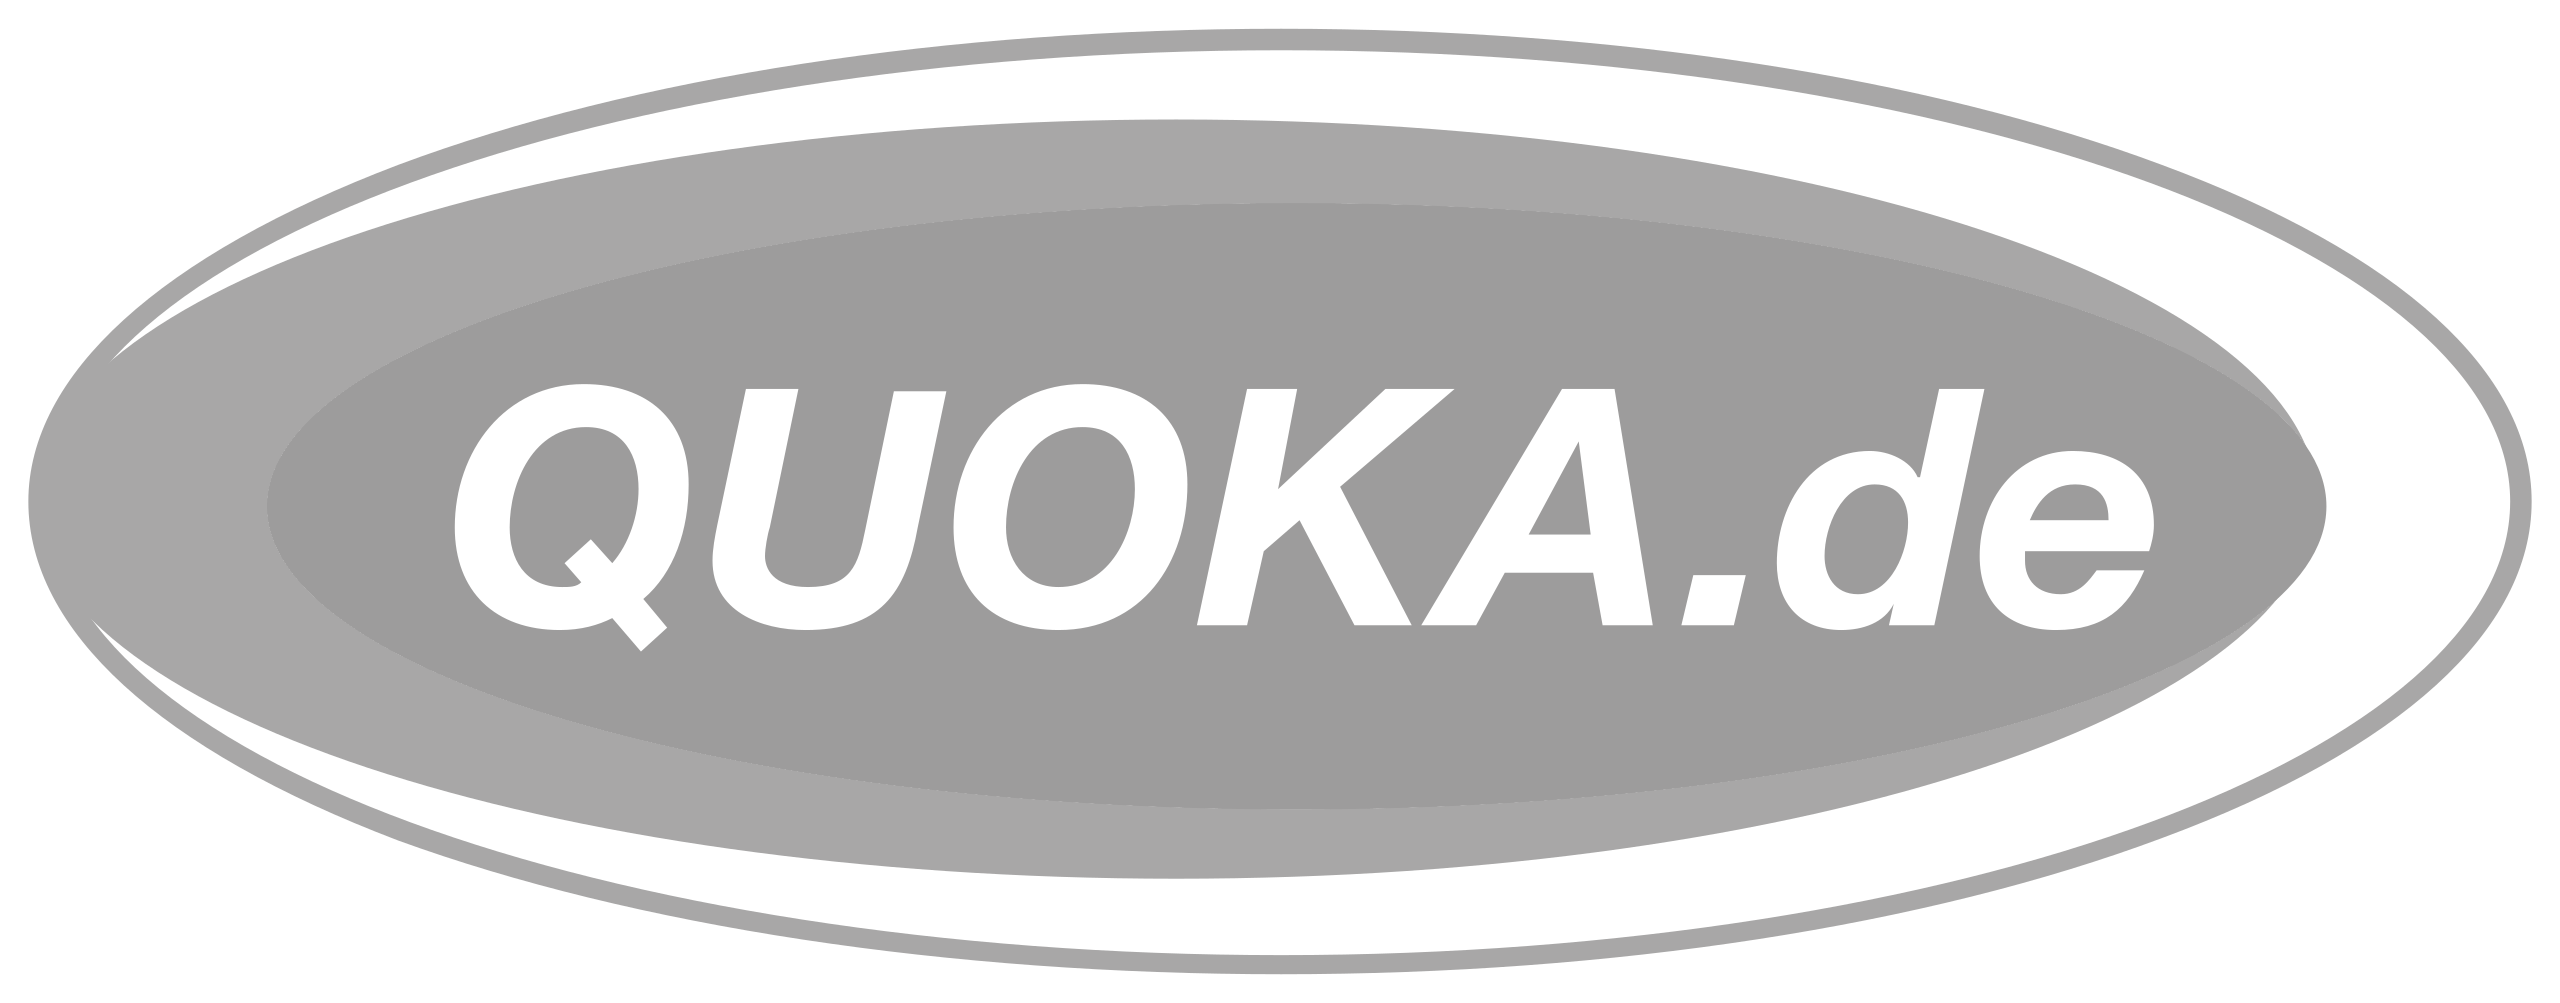 quoka.de(App & Web)